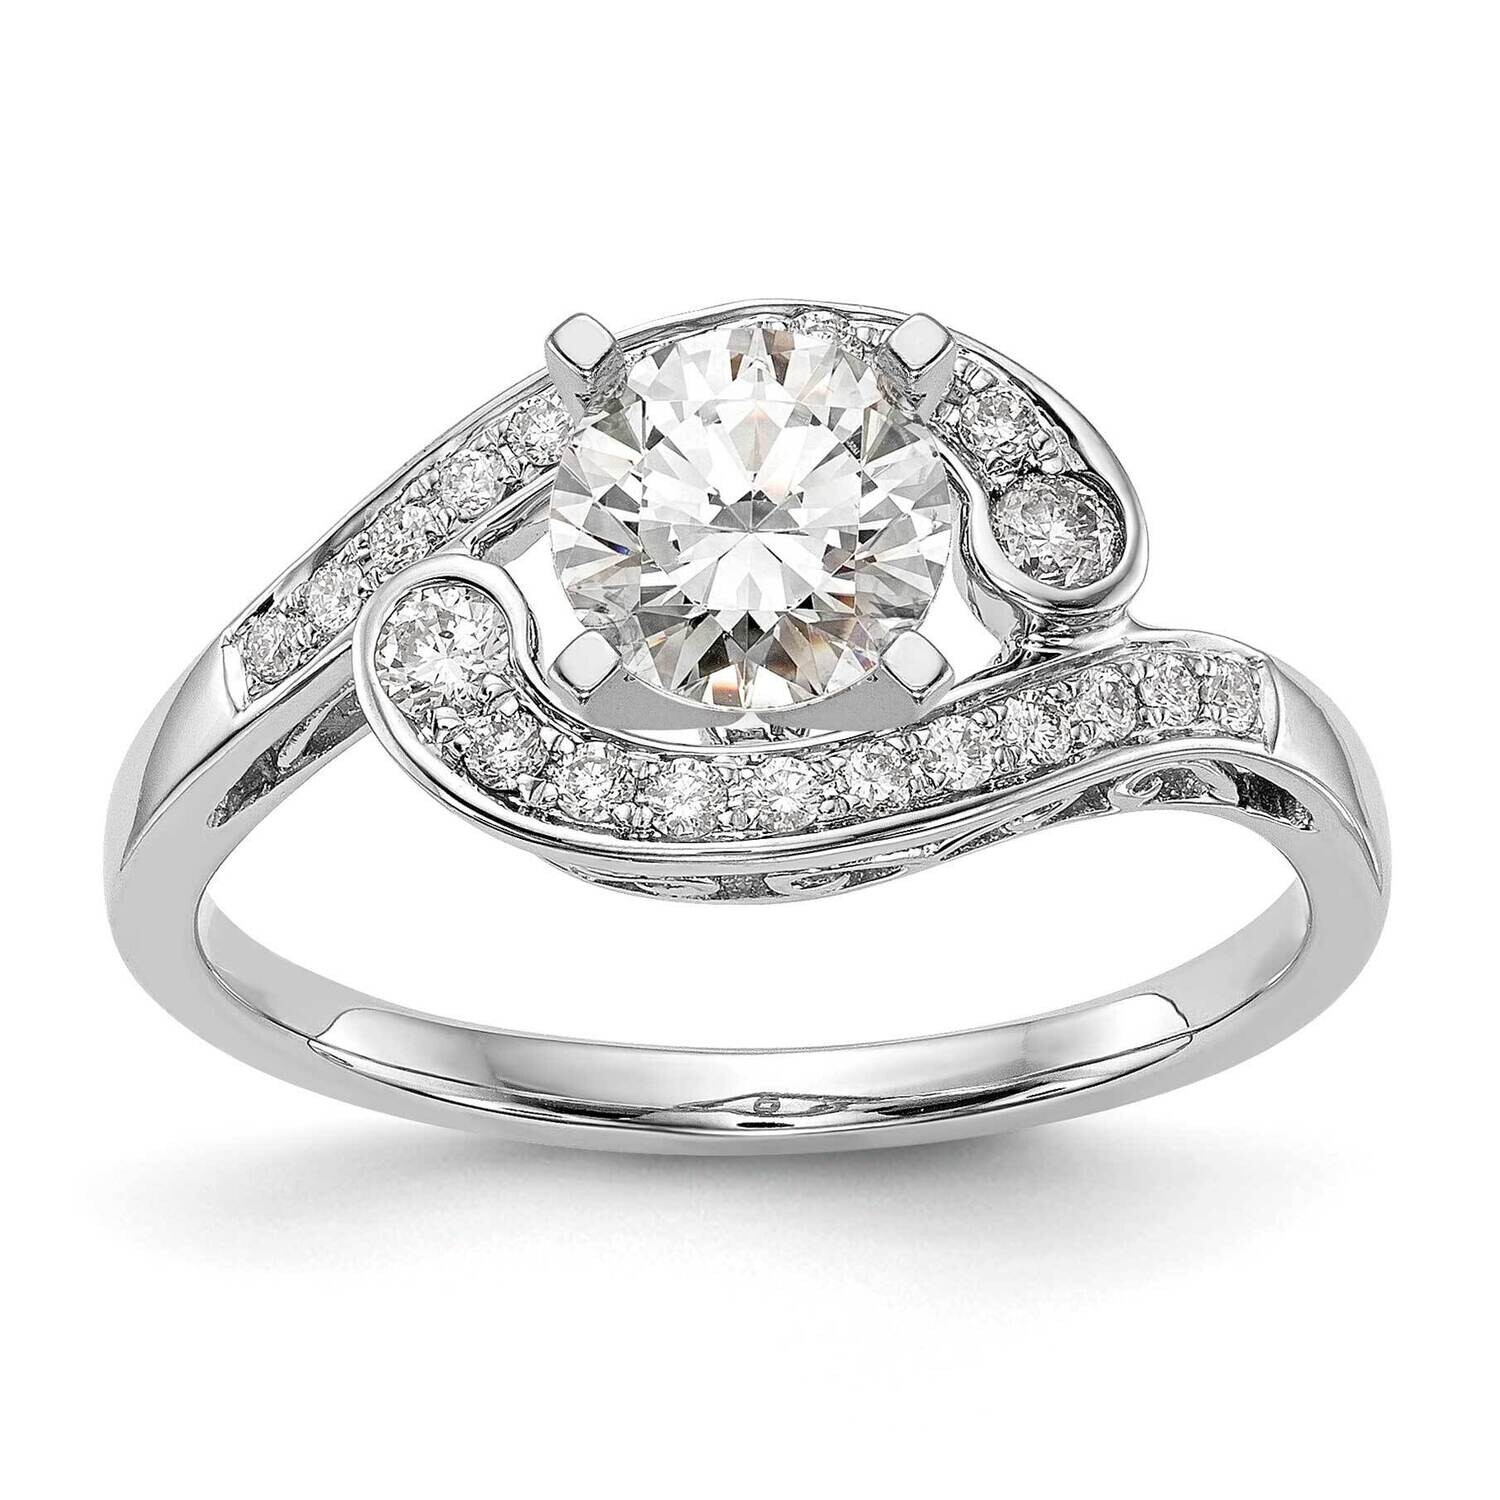 By-Pass Peg Set 1/4 Carat Diamond Semi-Mount Engagement Ring 14k White Gold RM2505E-025-WAA